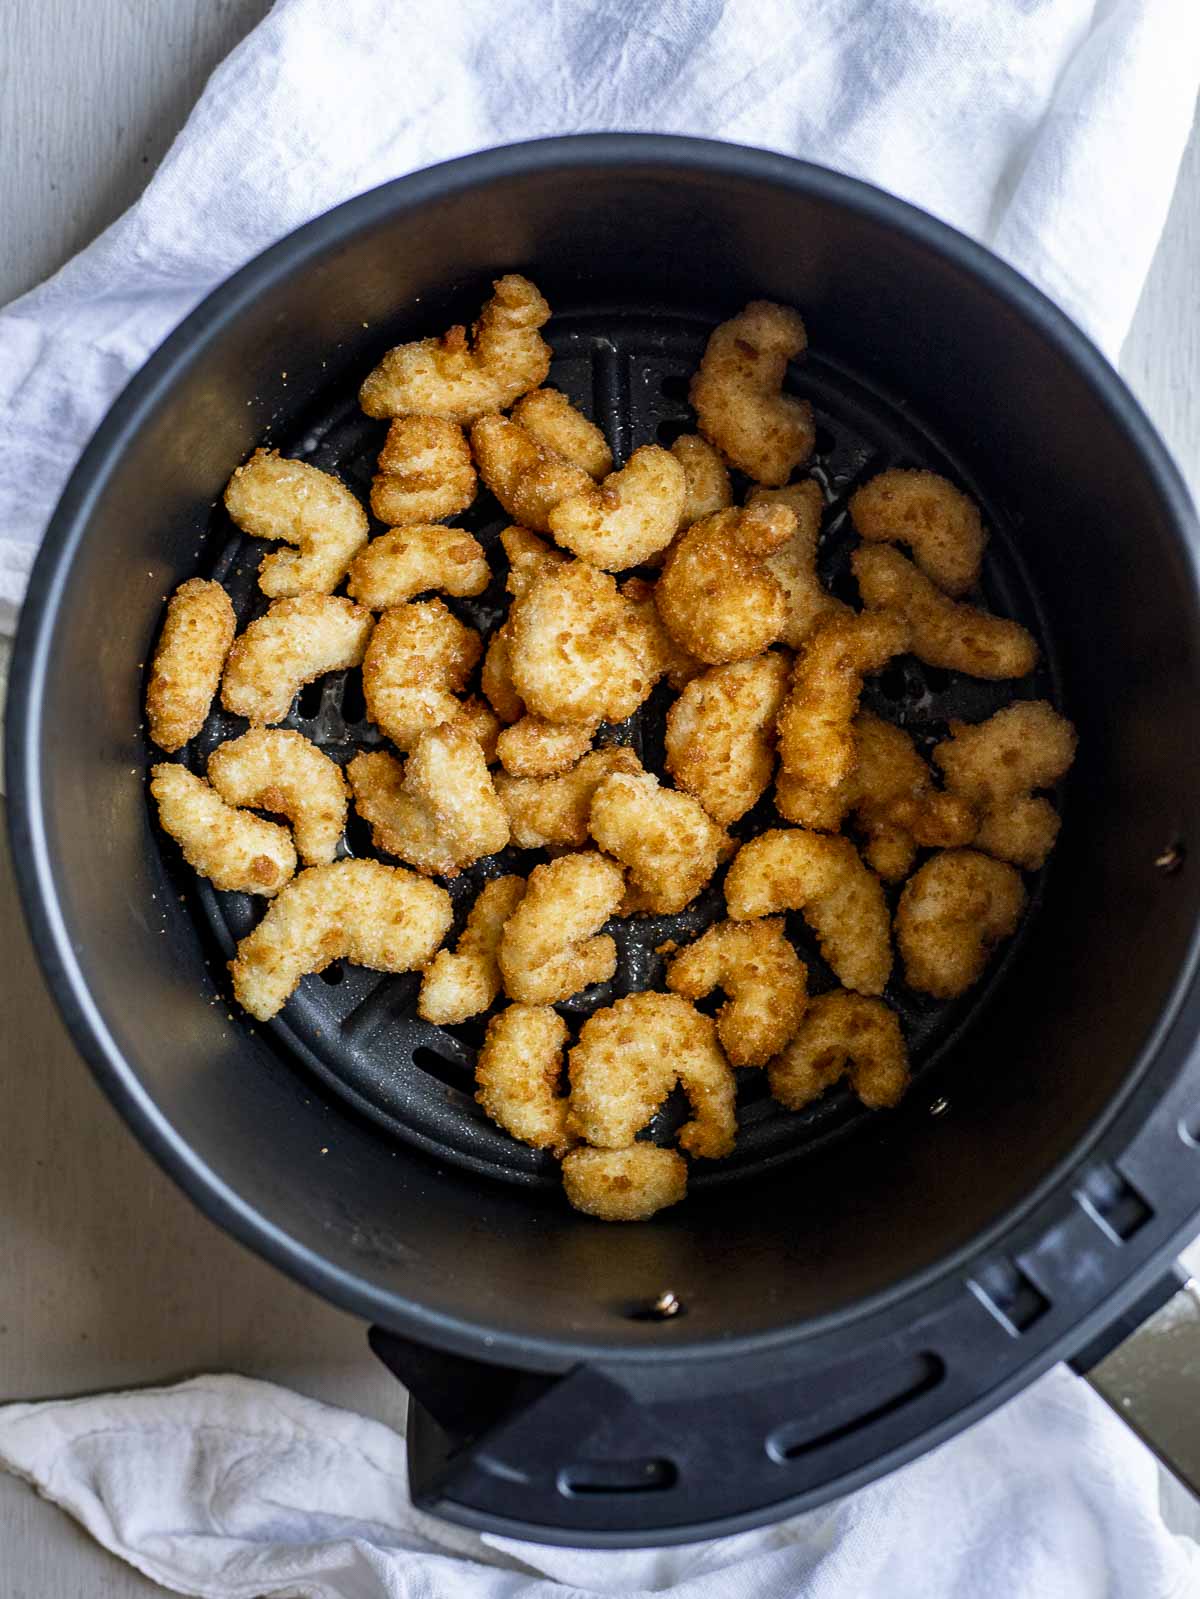 Popcorn shrimp in an air fryer basket.